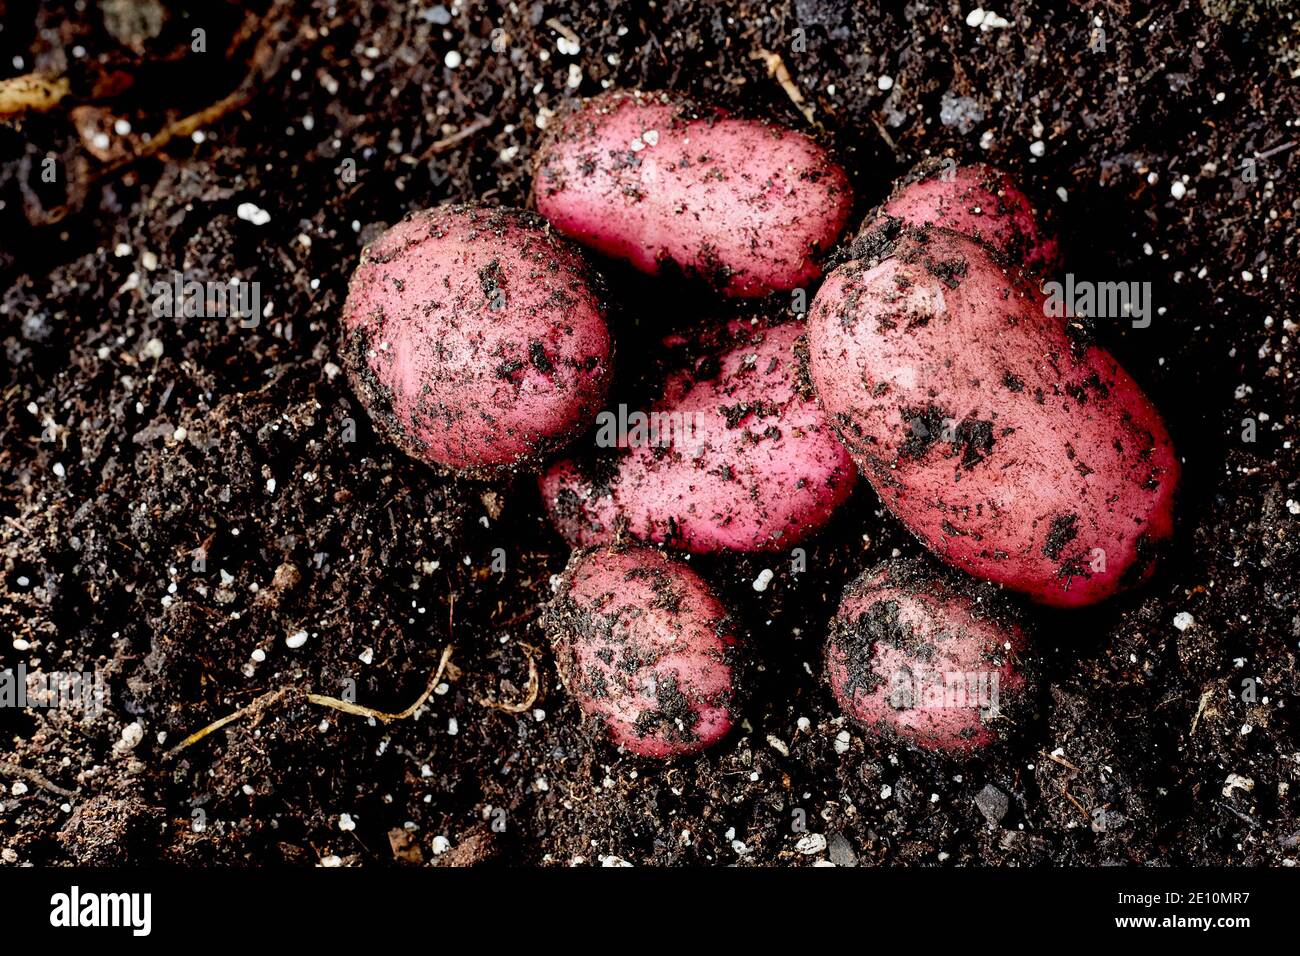 Pommes de terre rouges fraîches dans la saleté Banque D'Images